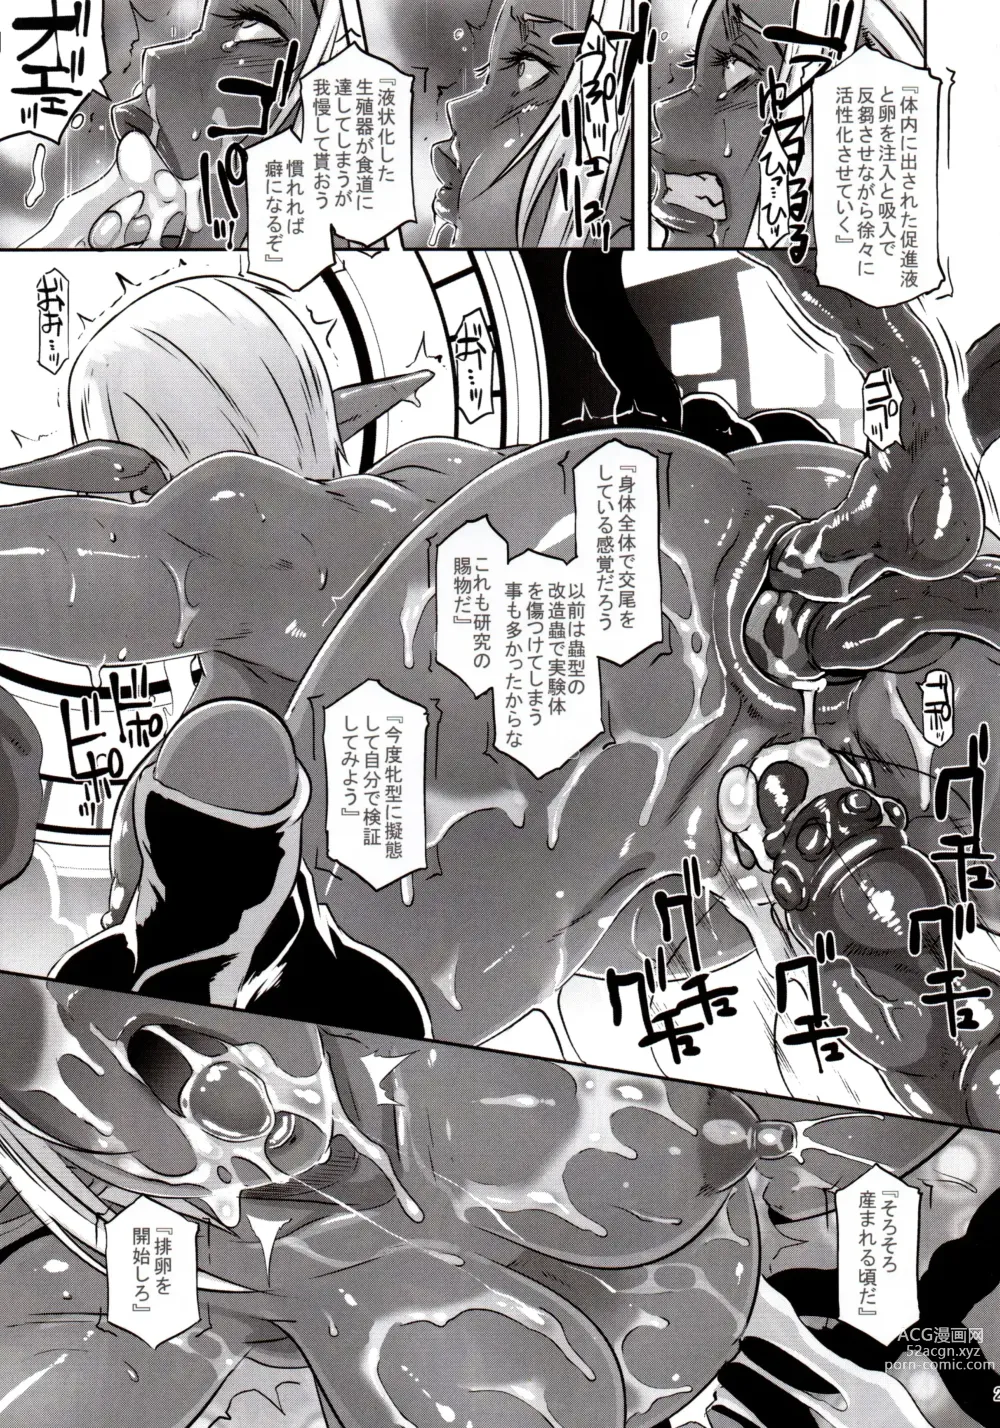 Page 26 of doujinshi DARK ELF vs ALIEN (decensored)